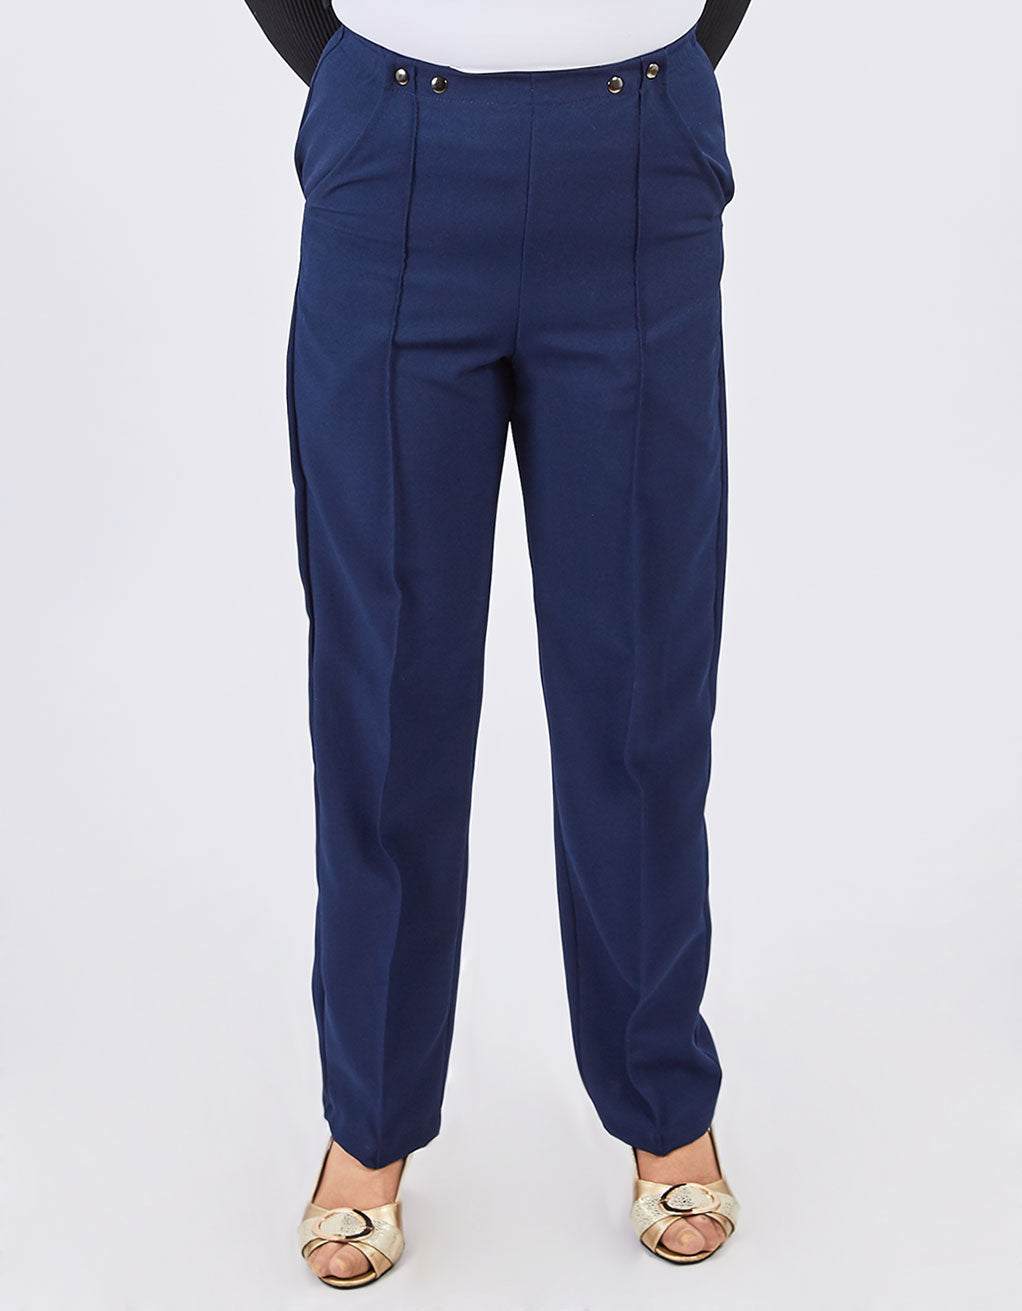 Pantalon adapté marine pour femme | FP62525 | EZ